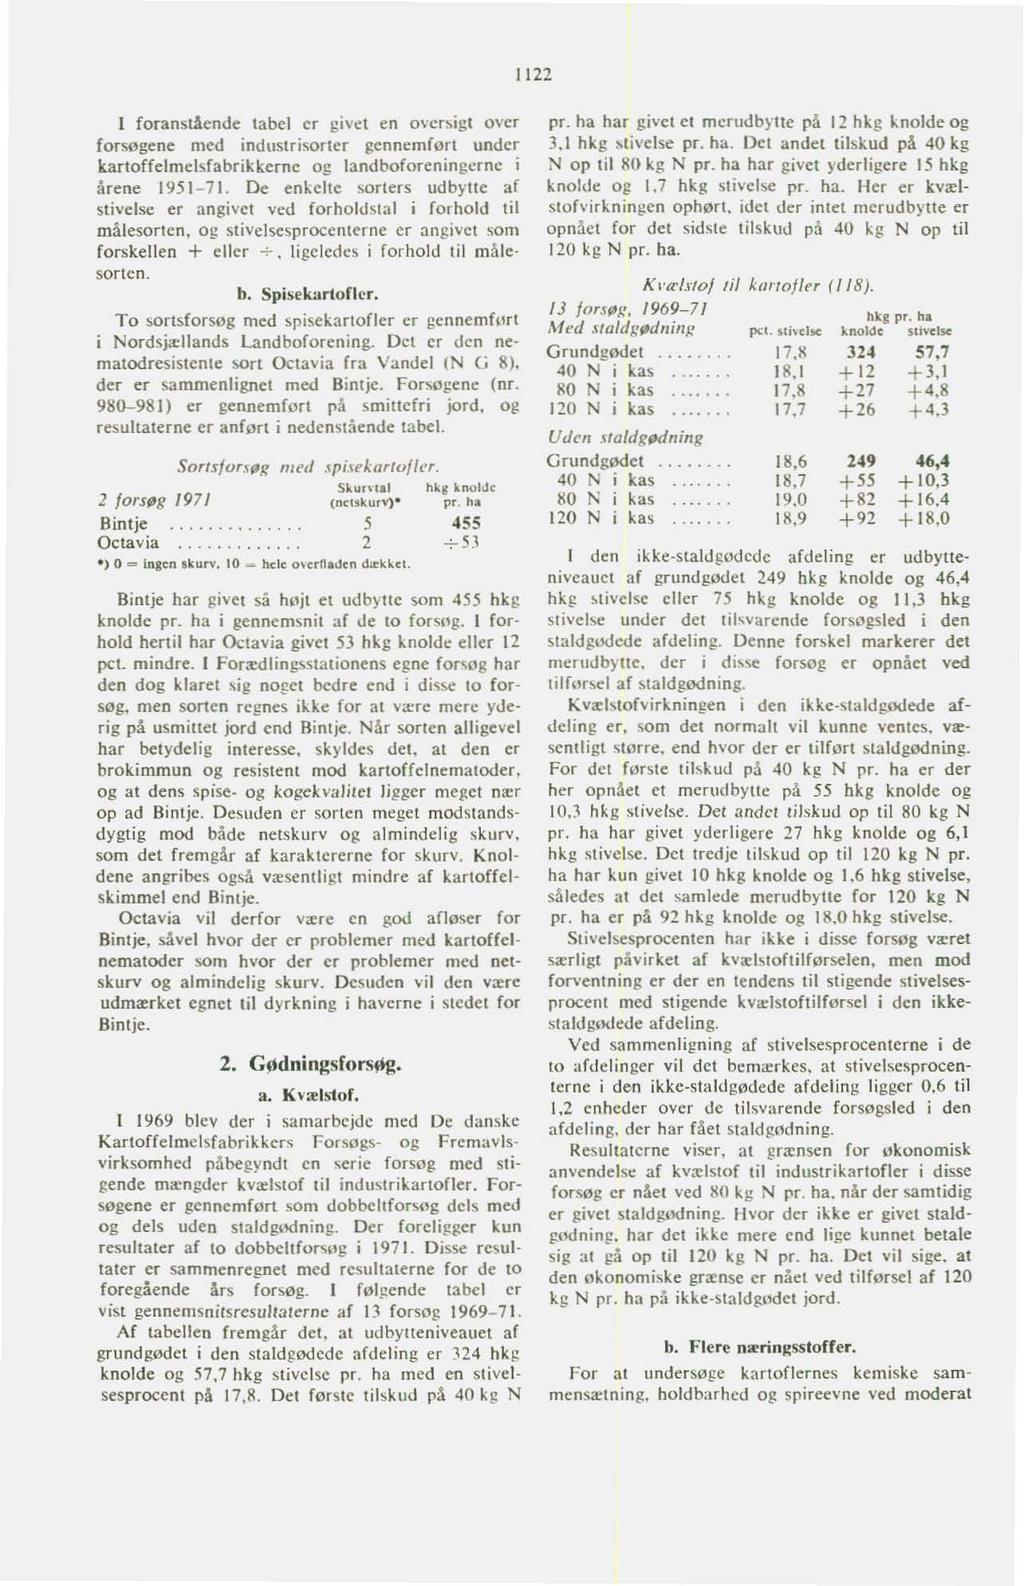 1122 I foranstående tabel er givet en over~igl over forsøgene med industrisorter gennemført under kartoffelmelsfabrikkerne og landboforeningerne i årene 1951-71.